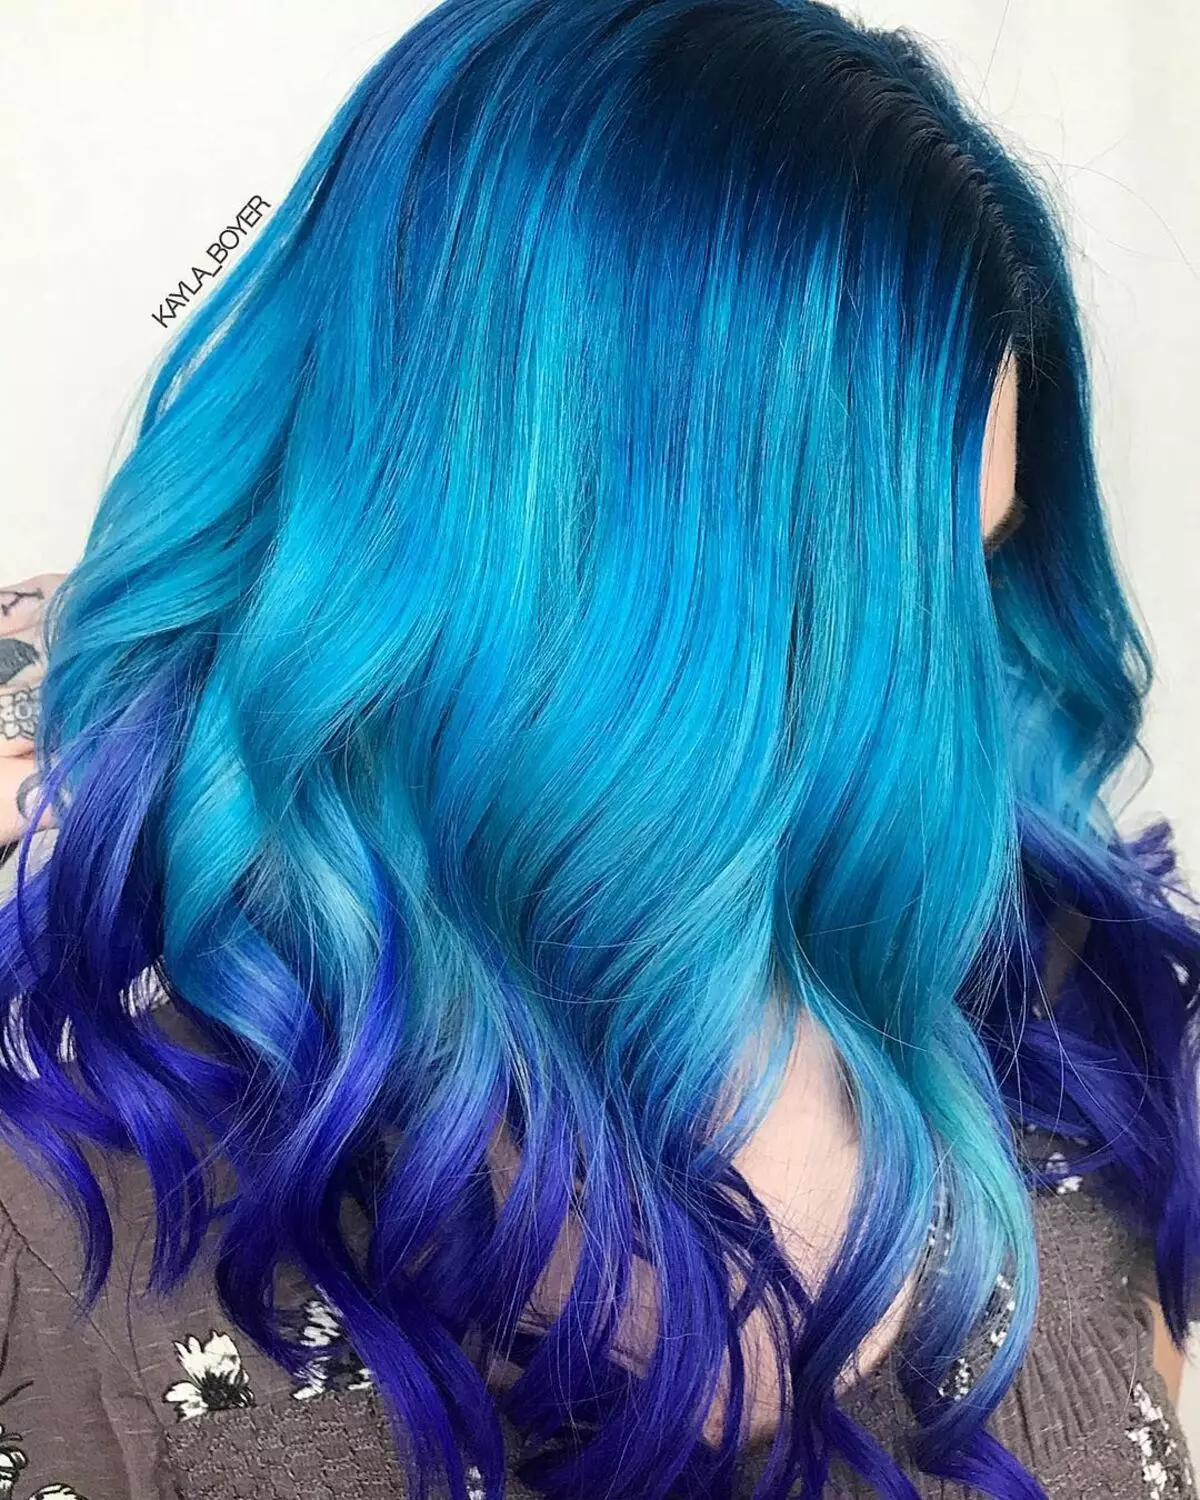 Plava boja kose: Pregled otpornih boja kose s plavim tampom, od svijetlo plave do crne i plave nijanse 5402_2